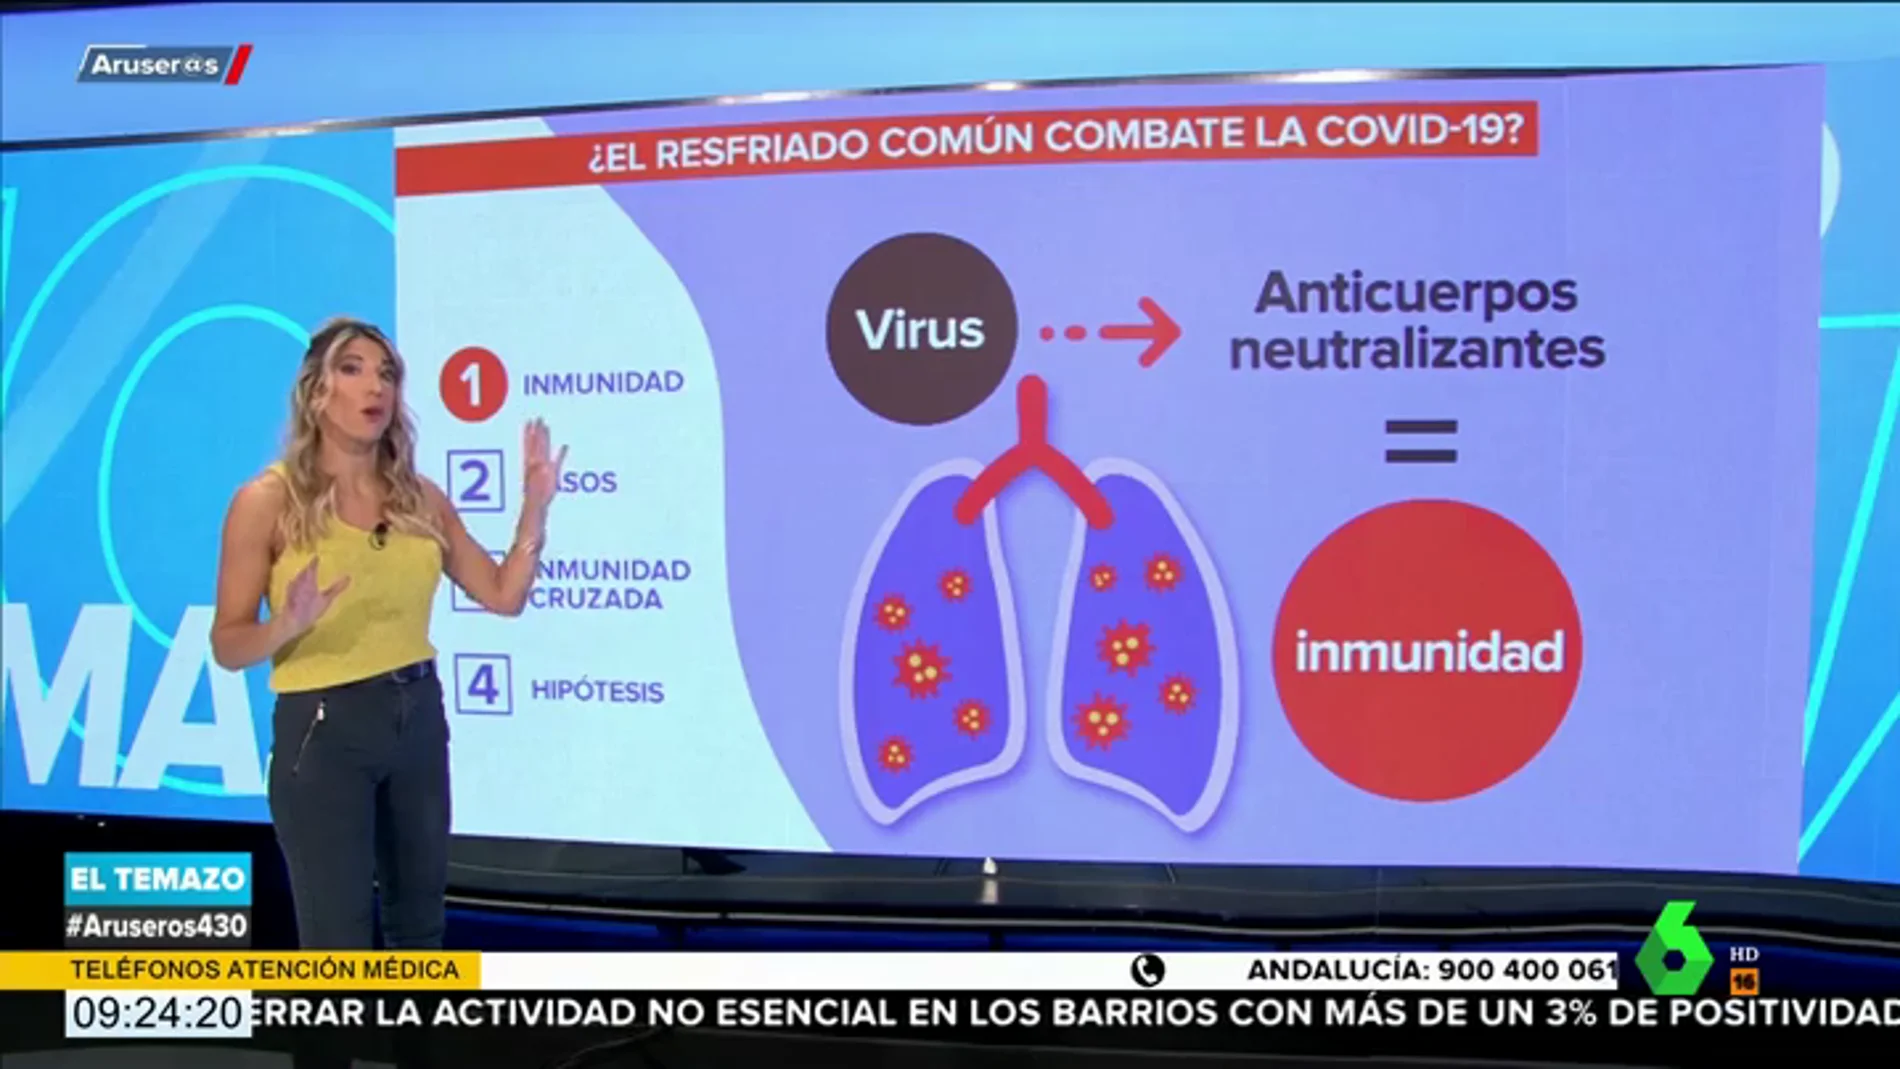 ¿El resfriado común combate el coronavirus? Un estudio afirma que sí